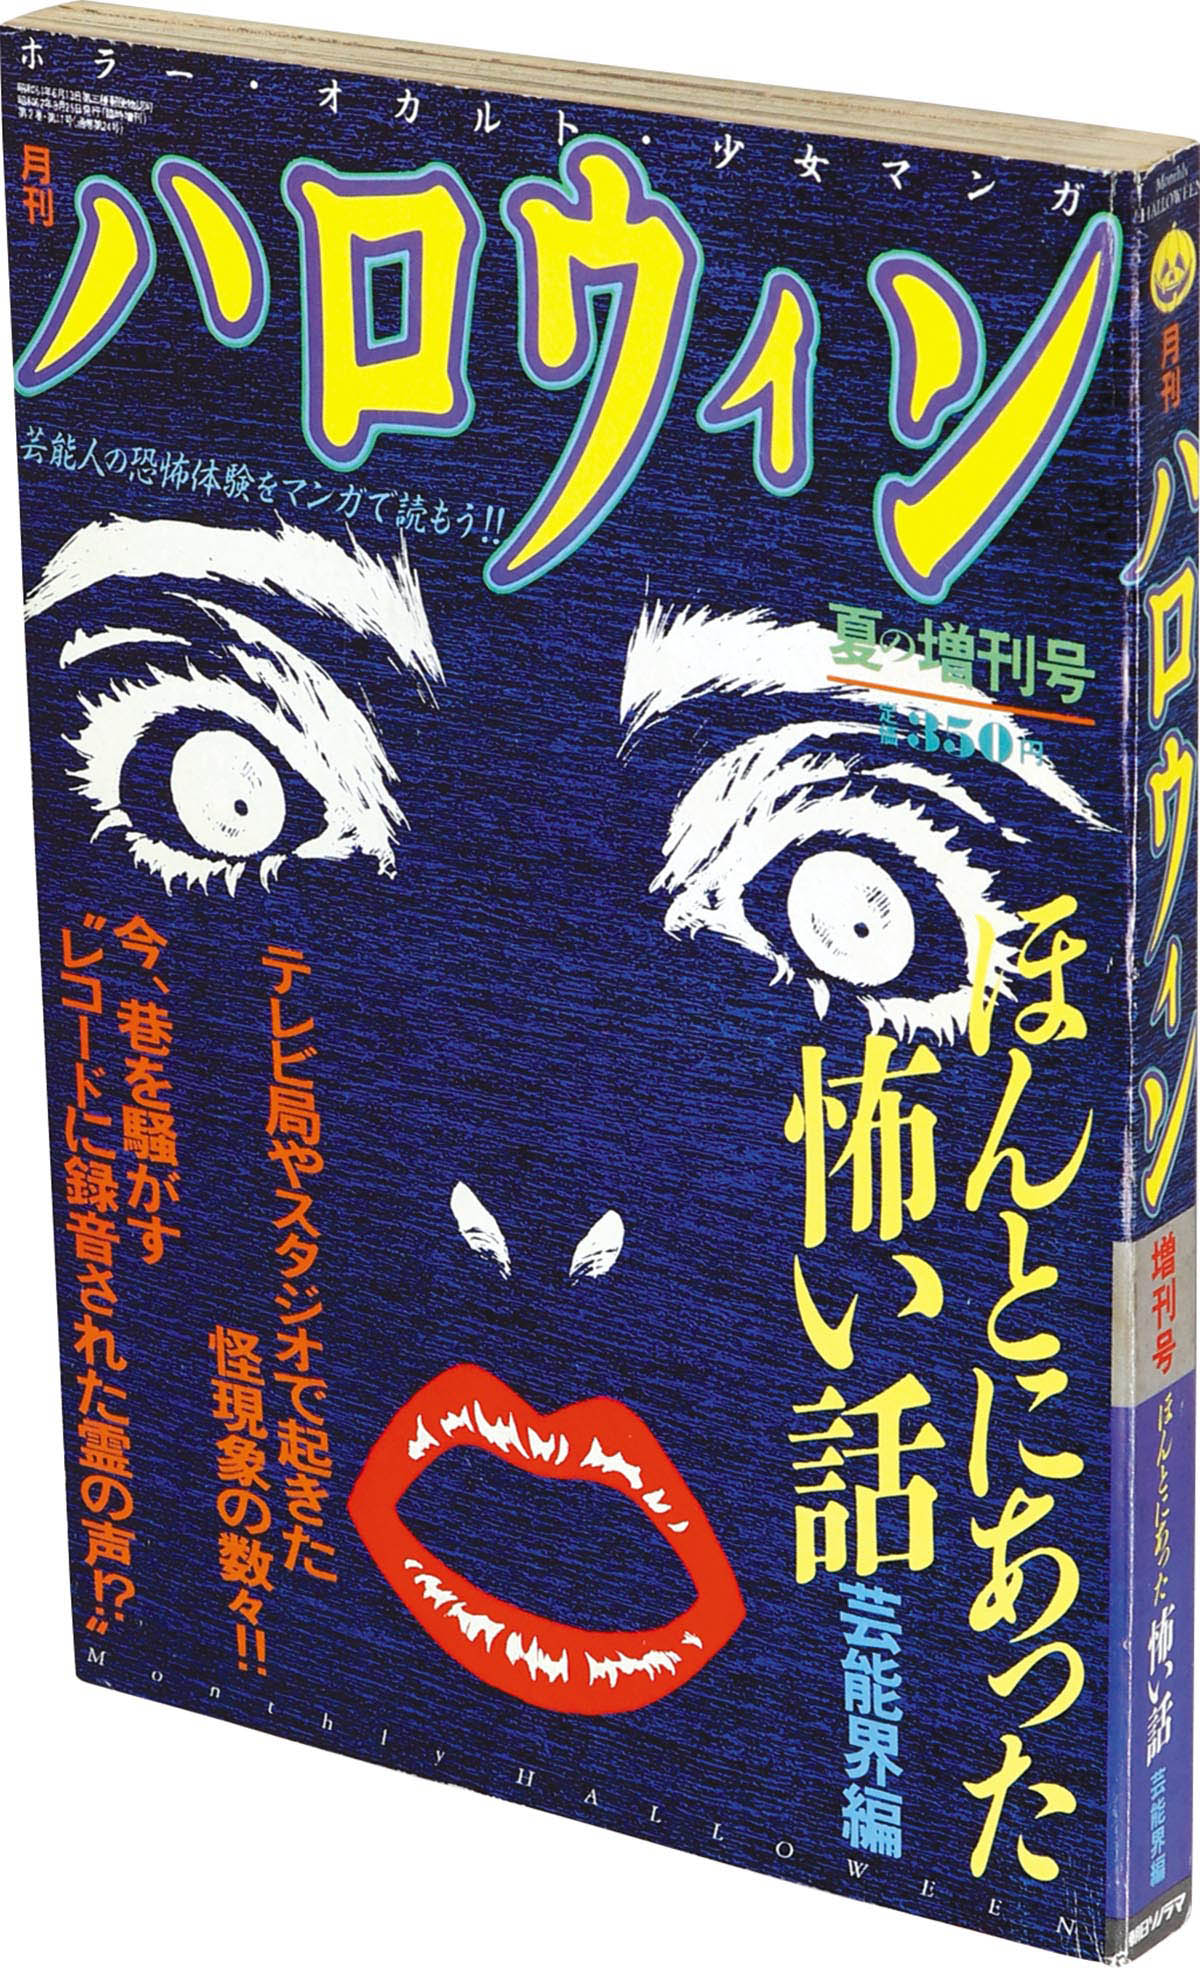 9806] 月刊ハロウィン夏の増刊号 ほんとにあった怖い話 芸能界編 1987